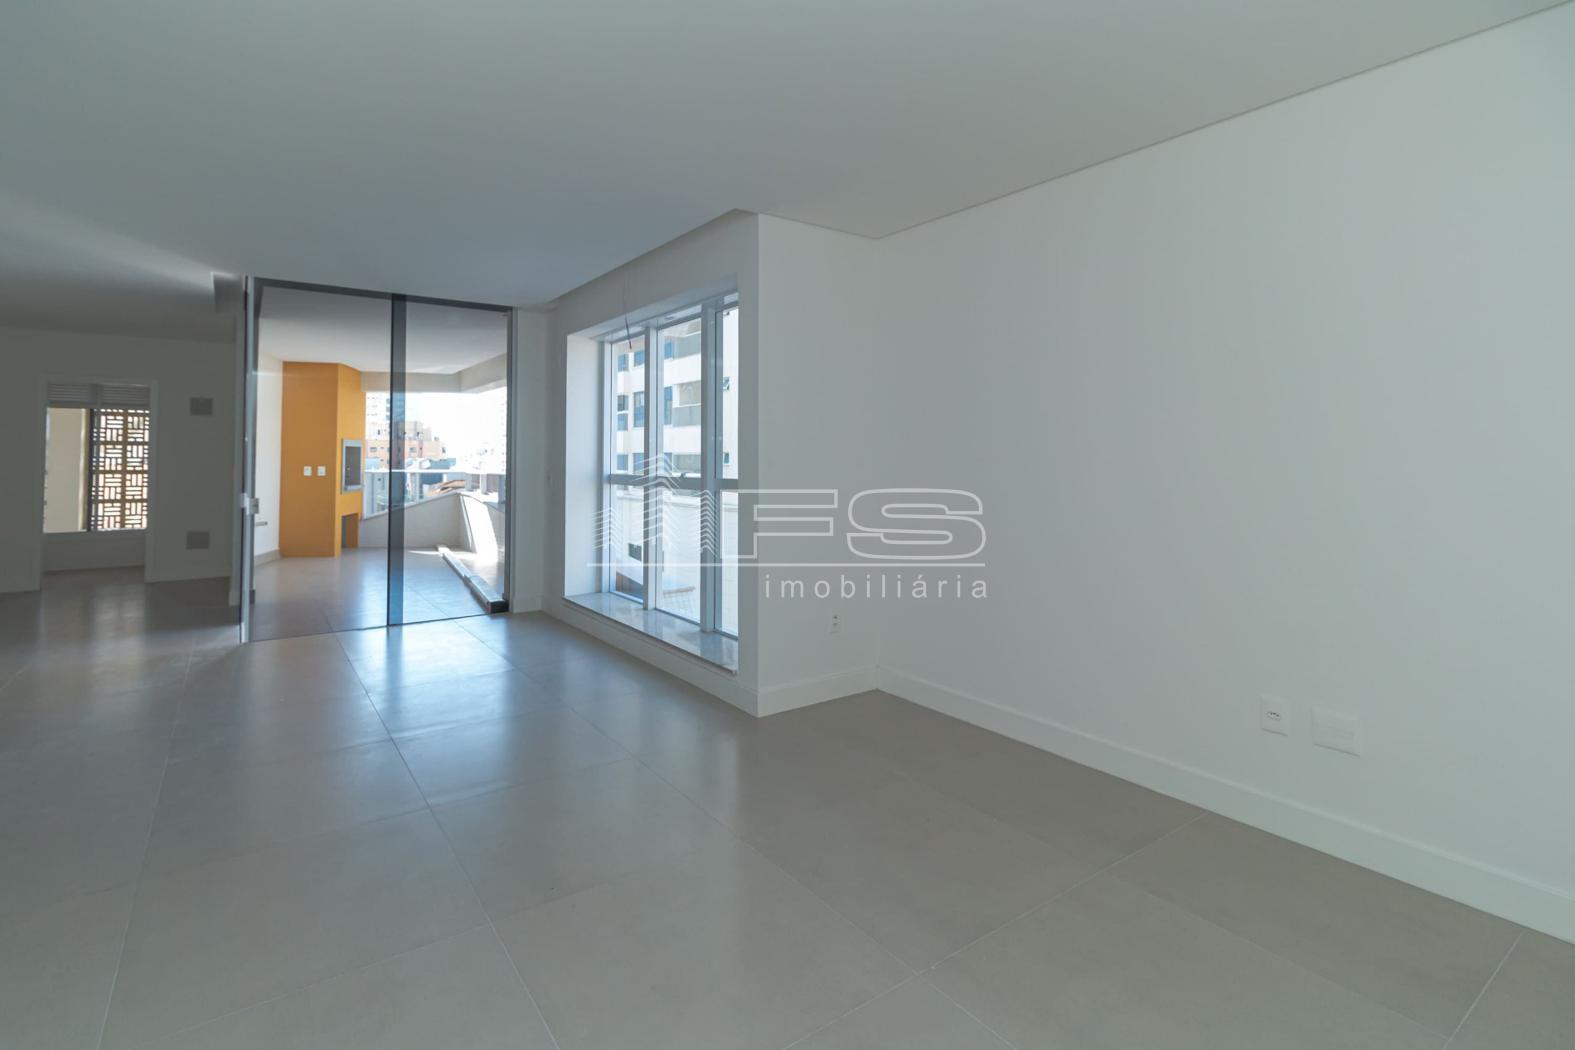 Apartamento com 3 Dormitórios à venda, 140 m² por R$ 1.460.000,00